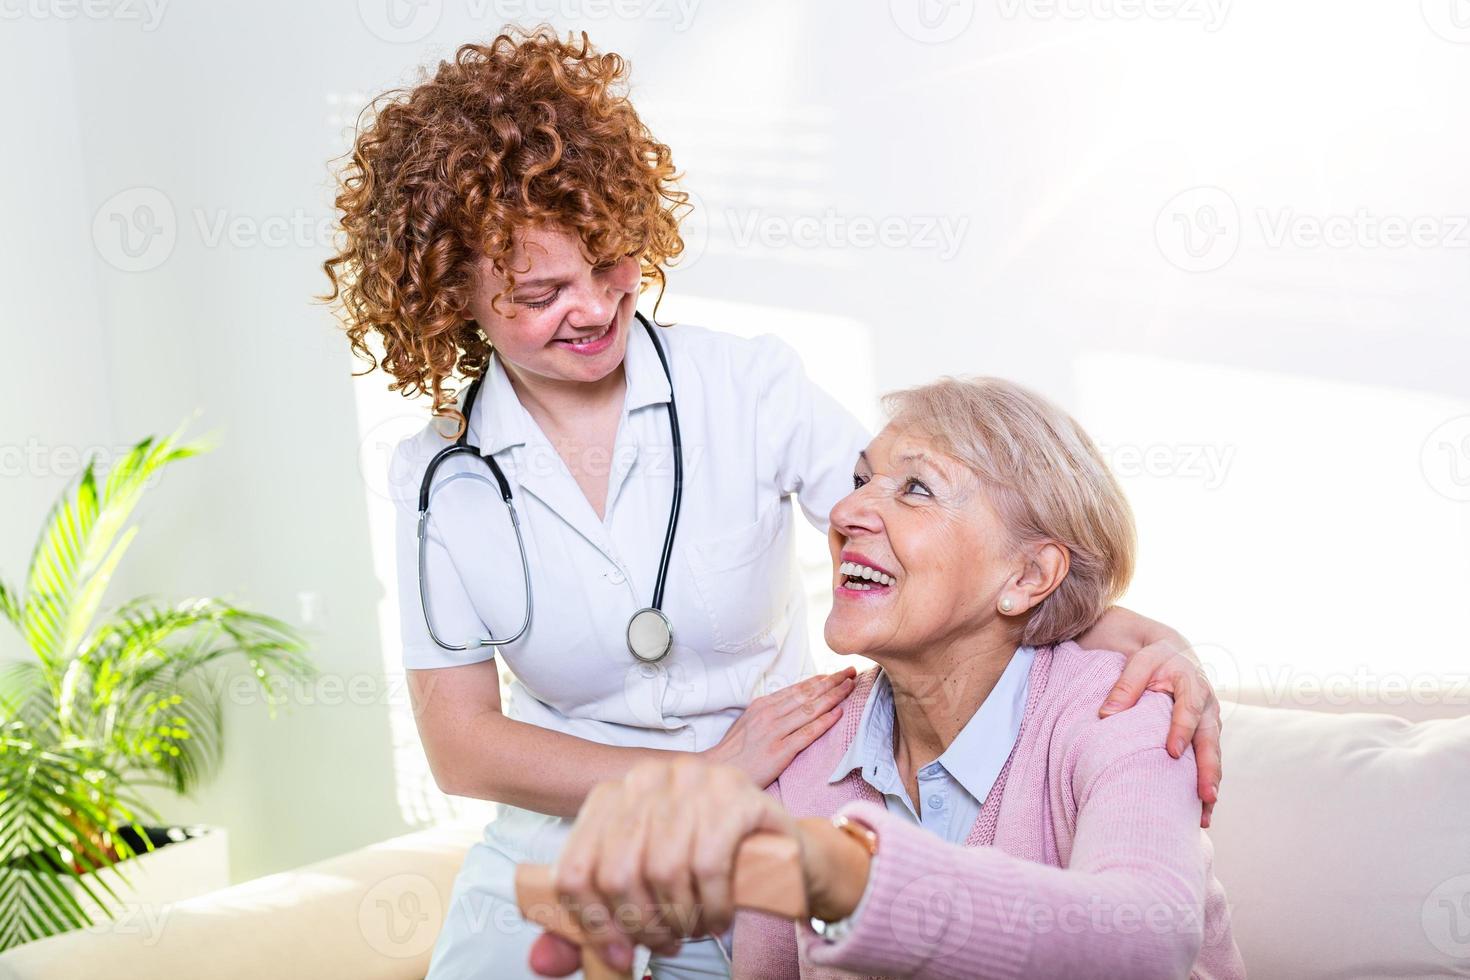 estreita relação positiva entre paciente idoso e cuidador. mulher sênior feliz falando com um cuidador amigável. jovem cuidadora bonita e mulher feliz mais velha foto